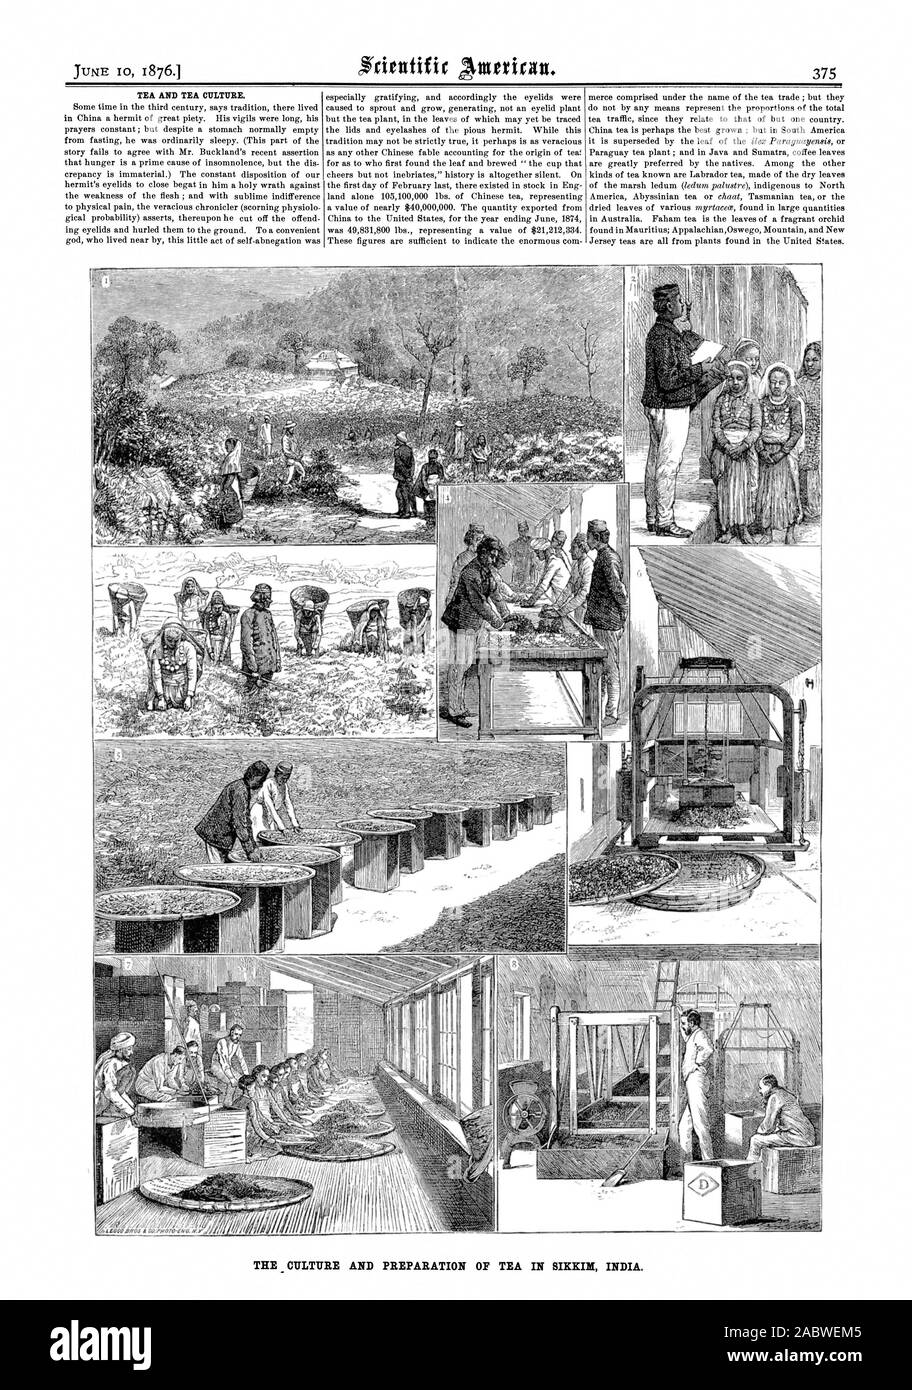 Bollitore per tè e la cultura del tè. La cultura e la preparazione del tè in SIKKIM INDIA., Scientific American, 1876-06-10 Foto Stock